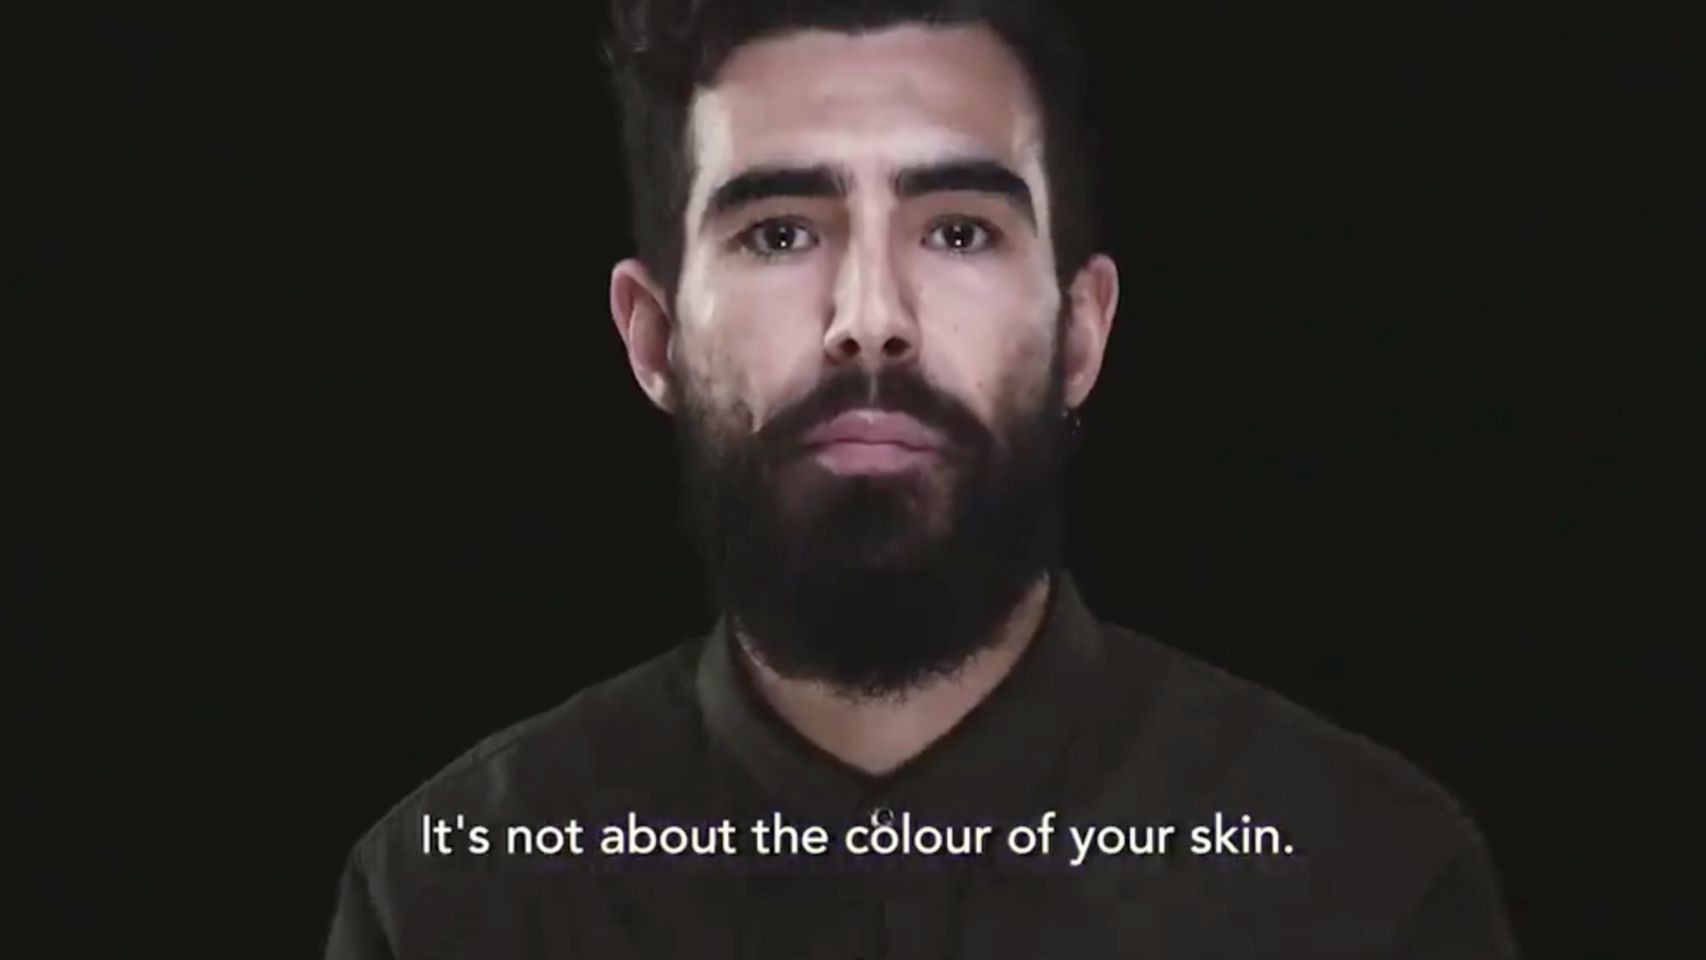 Captura del vídeo de Inditex en pro de la diversidad